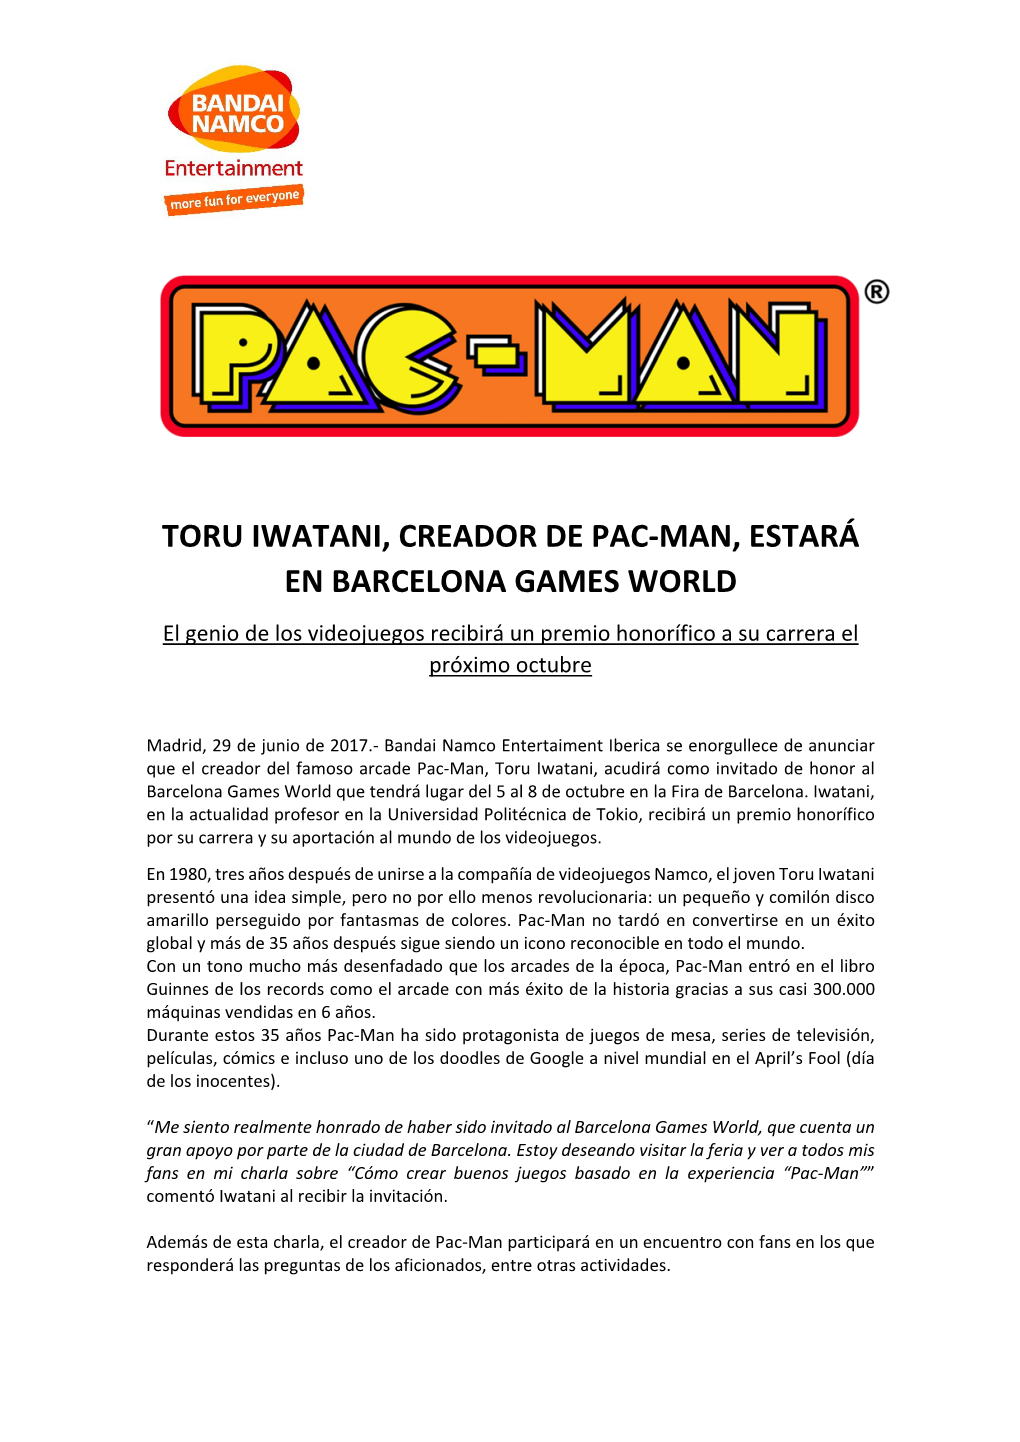 TORU IWATANI, CREADOR DE PAC‐MAN, ESTARÁ EN BARCELONA GAMES WORLD El Genio De Los Videojuegos Recibirá Un Premio Honorífico a Su Carrera El Próximo Octubre